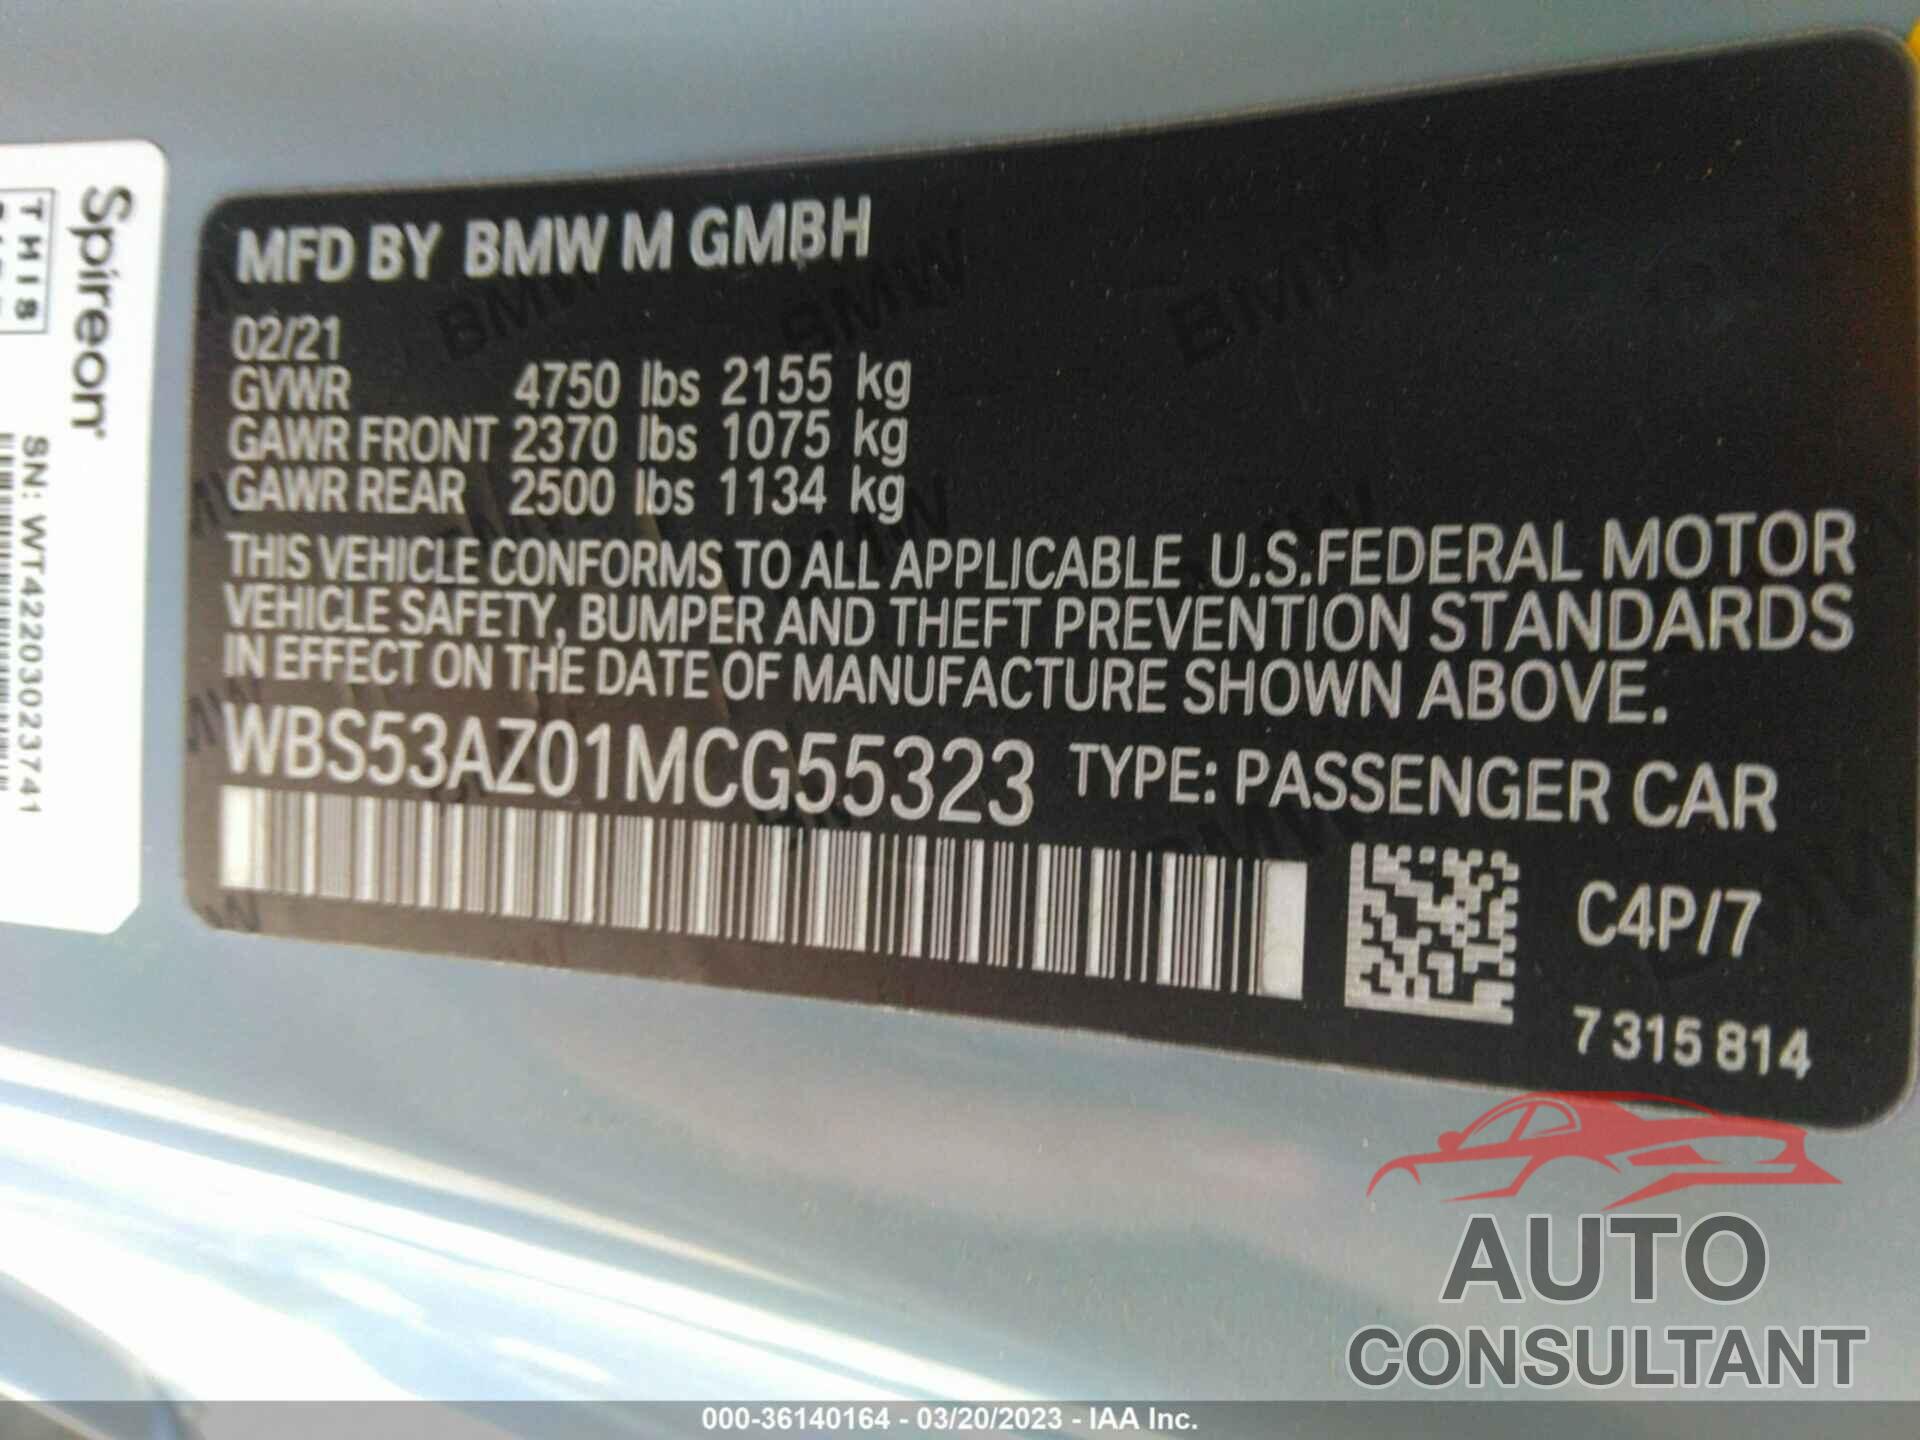 BMW M4 2021 - WBS53AZ01MCG55323